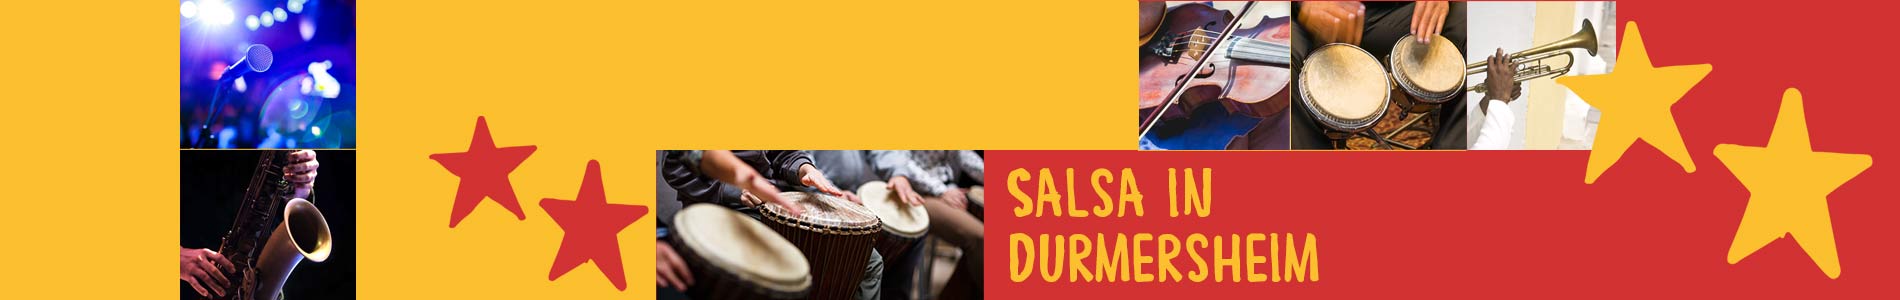 Salsa in Durmersheim – Salsa lernen und tanzen, Tanzkurse, Partys, Veranstaltungen